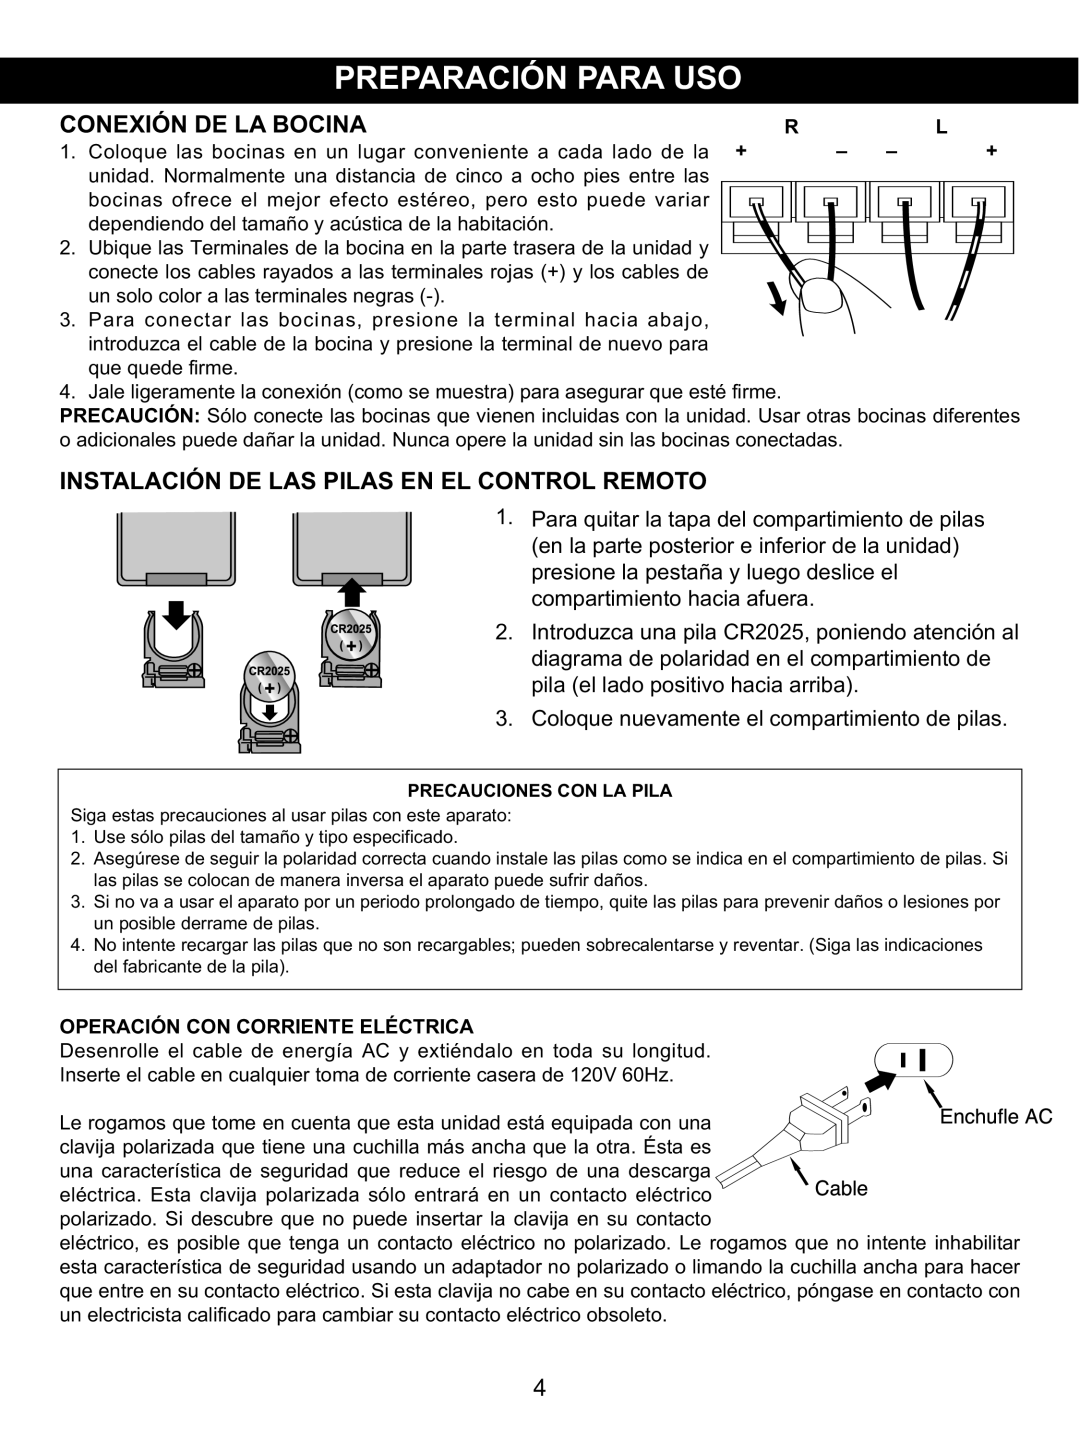 Memorex MX4137 manual Conexión De La Bocina, Instalación De Las Pilas En El Control Remoto, compartimiento hacia afuera 